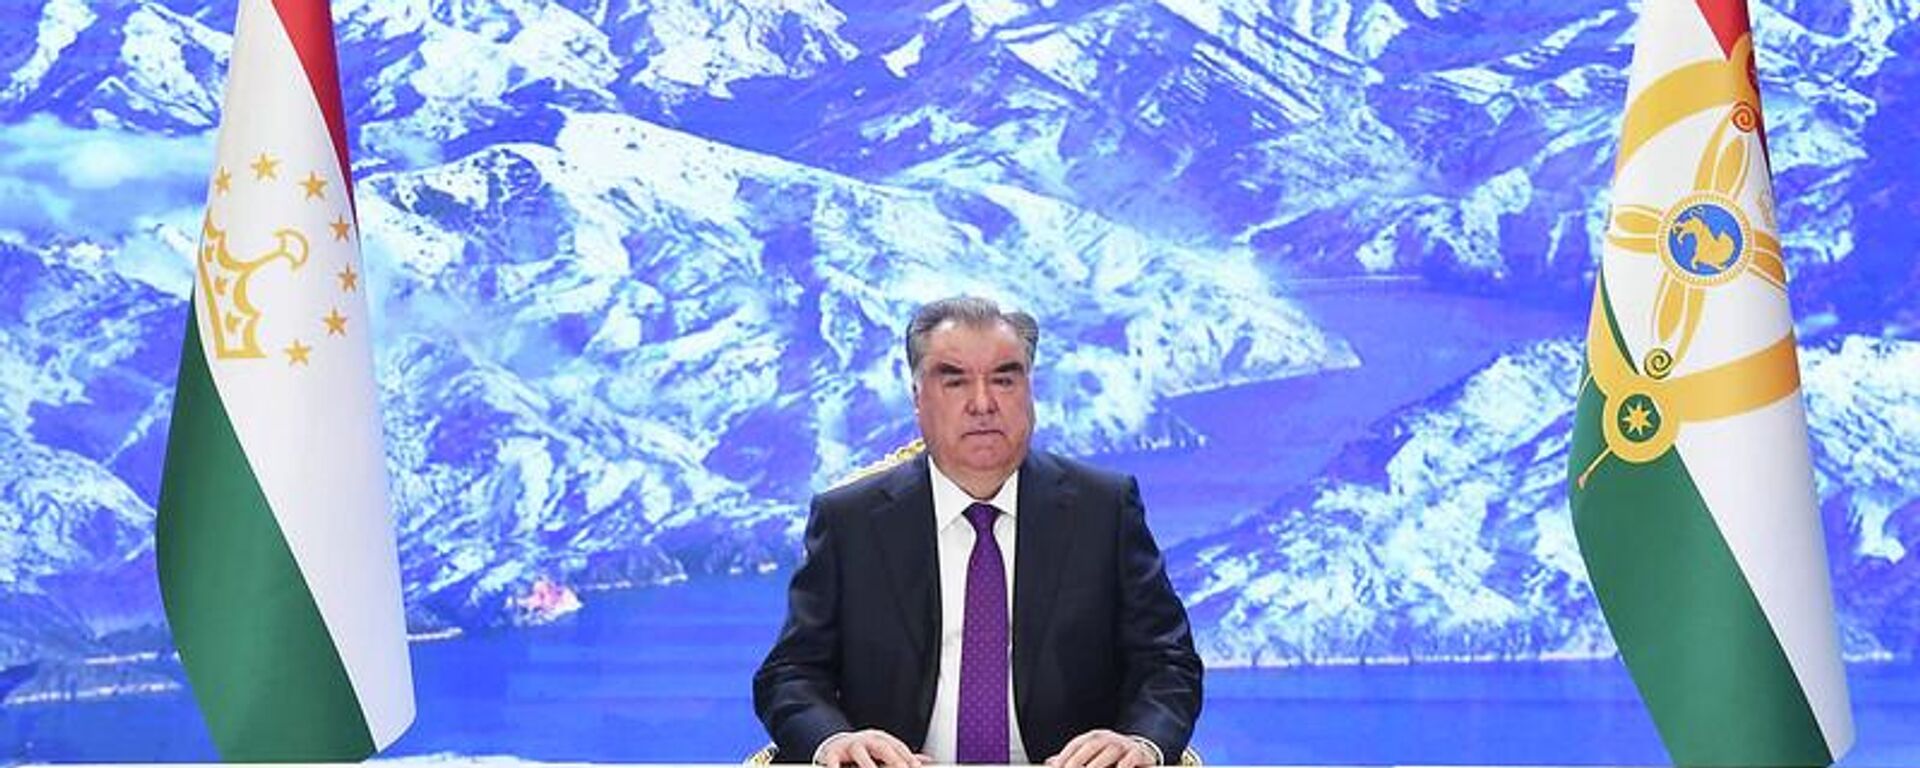 Президент Таджикистана Эмомали Рахмон выступил на церемонии открытия четвертого Азиатско-Тихоокеанского водного саммита - Sputnik Тоҷикистон, 1920, 23.04.2022